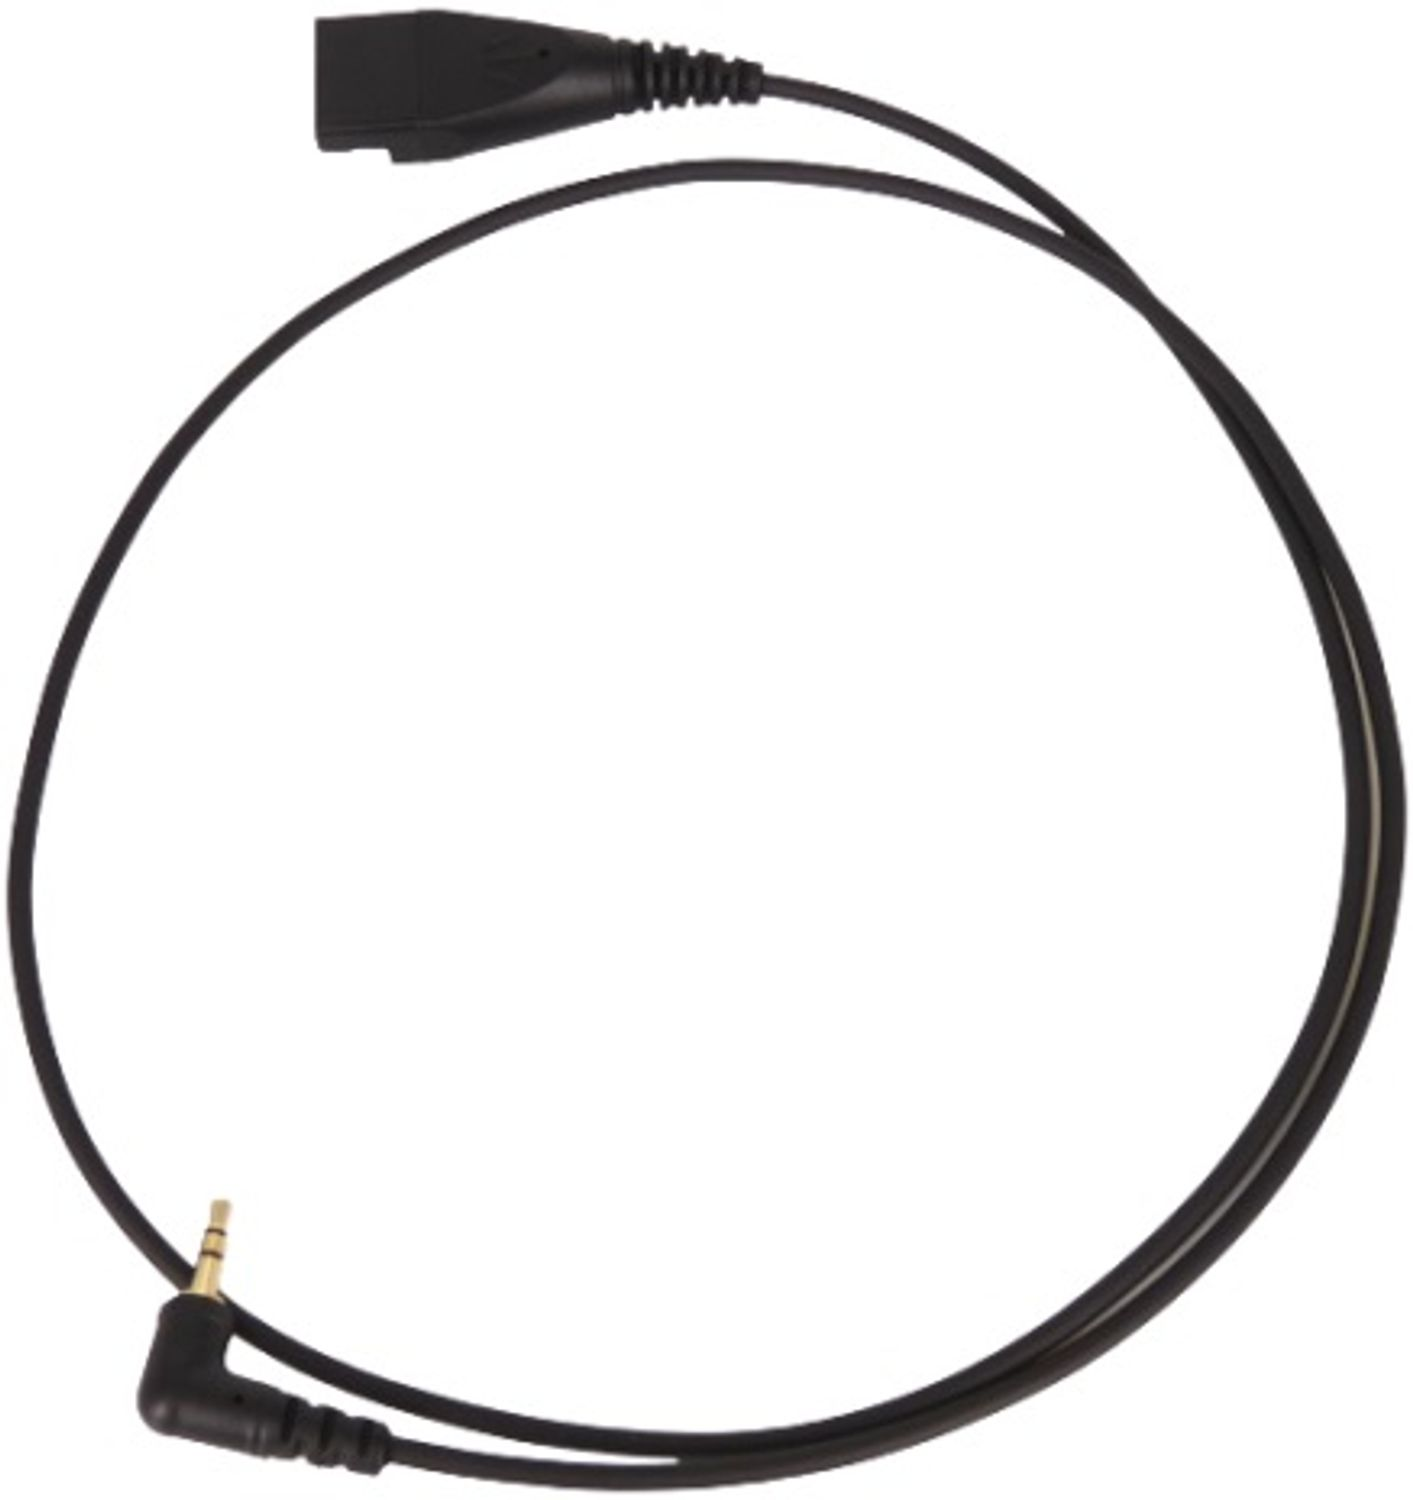 Zubehör für Schwarz 2,5mm-Klinke-Kabel GEQUDIO mit Gigaset, Panasonic Telefon kompatibel Headset